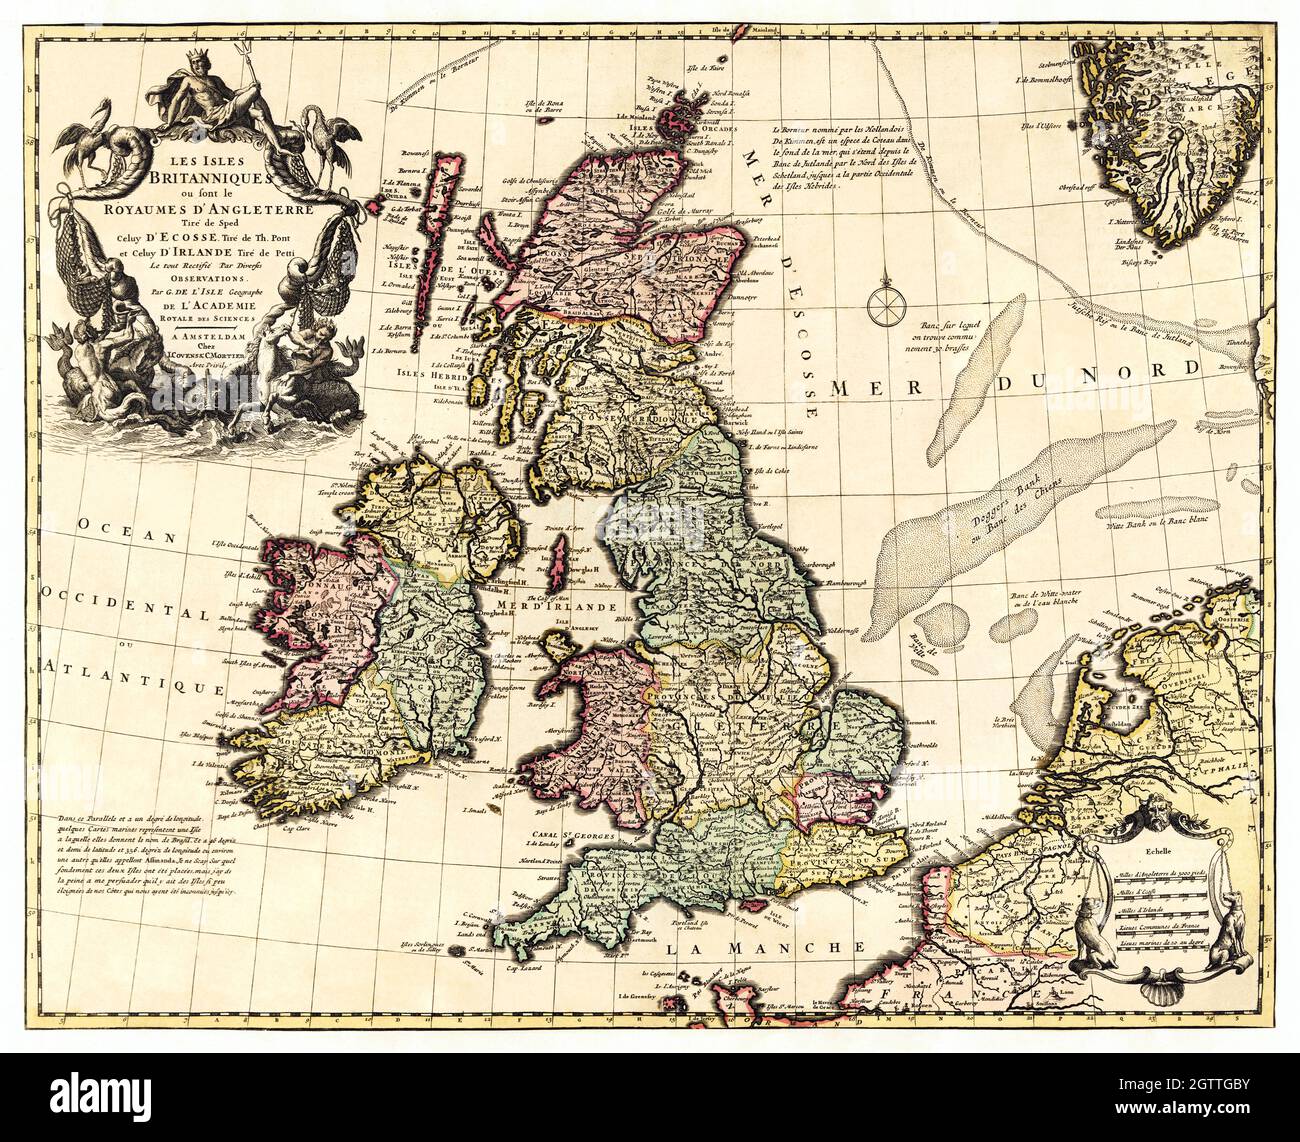 Britische Inseln im frühen 18. Jahrhundert Karte - Vereinigtes Königreich, Großbritannien Karte, 1700er Jahre Stockfoto